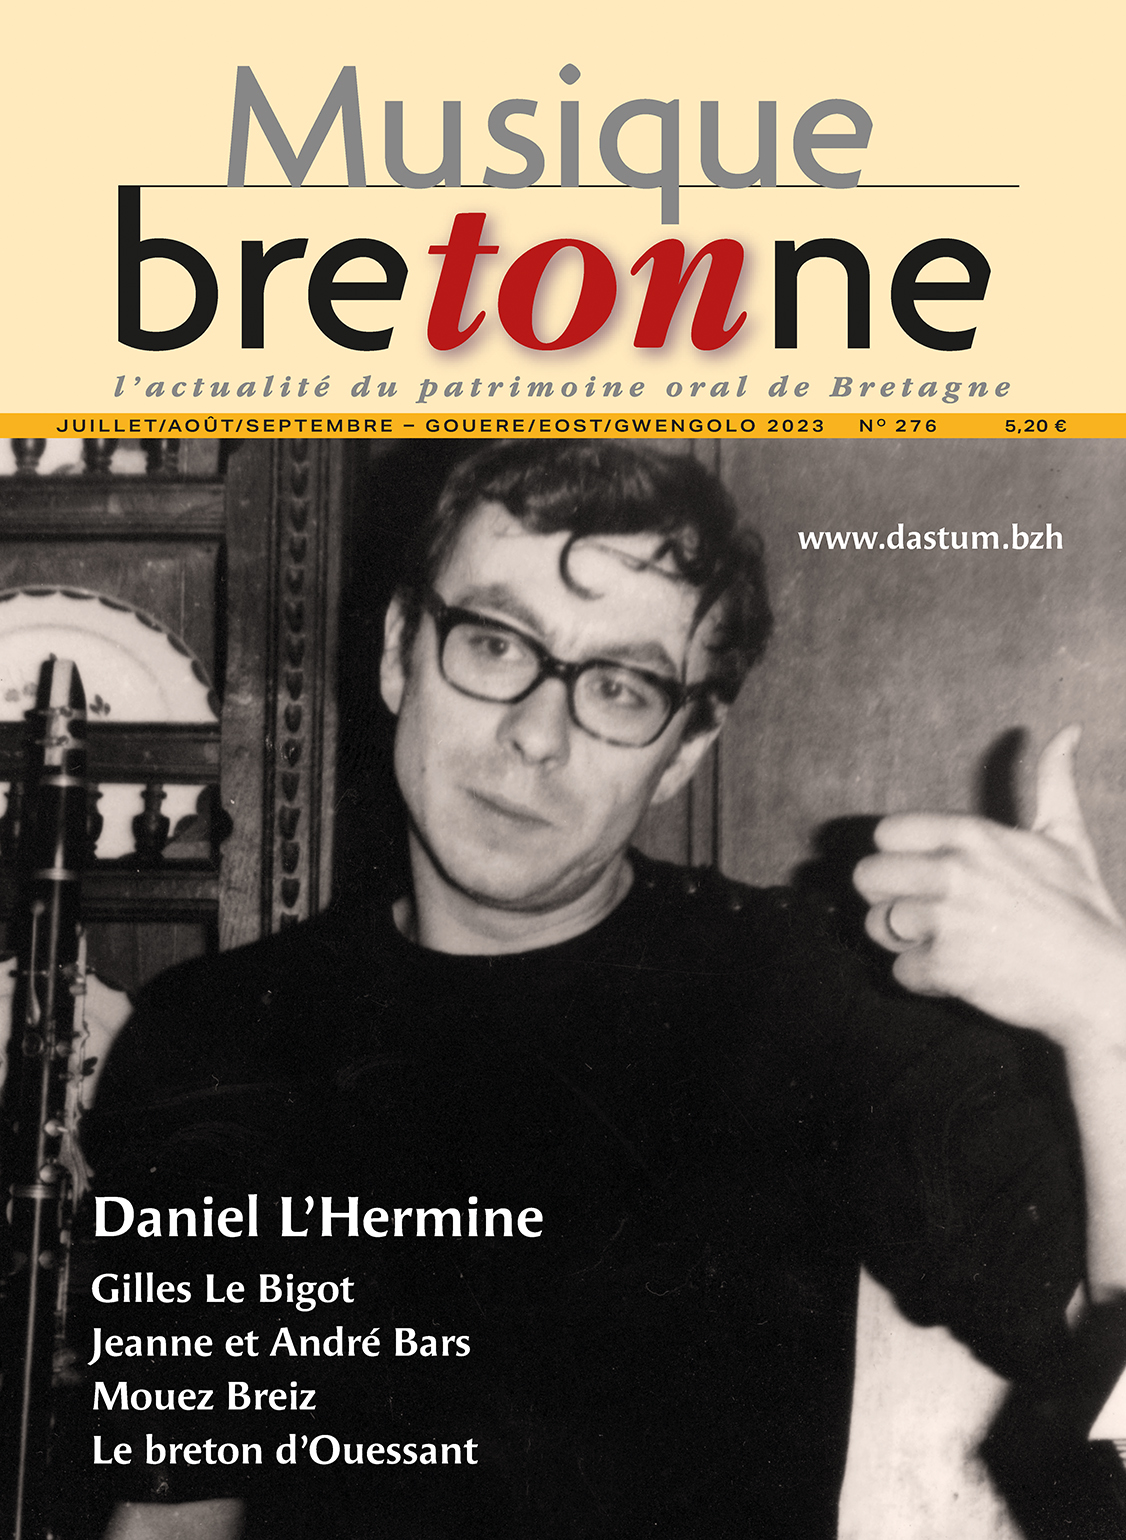 Anthologie du patrimoine phonographique breton 1925-1960. La musique  bretonne à travers le regard d'Hermann Wolf - Dastum